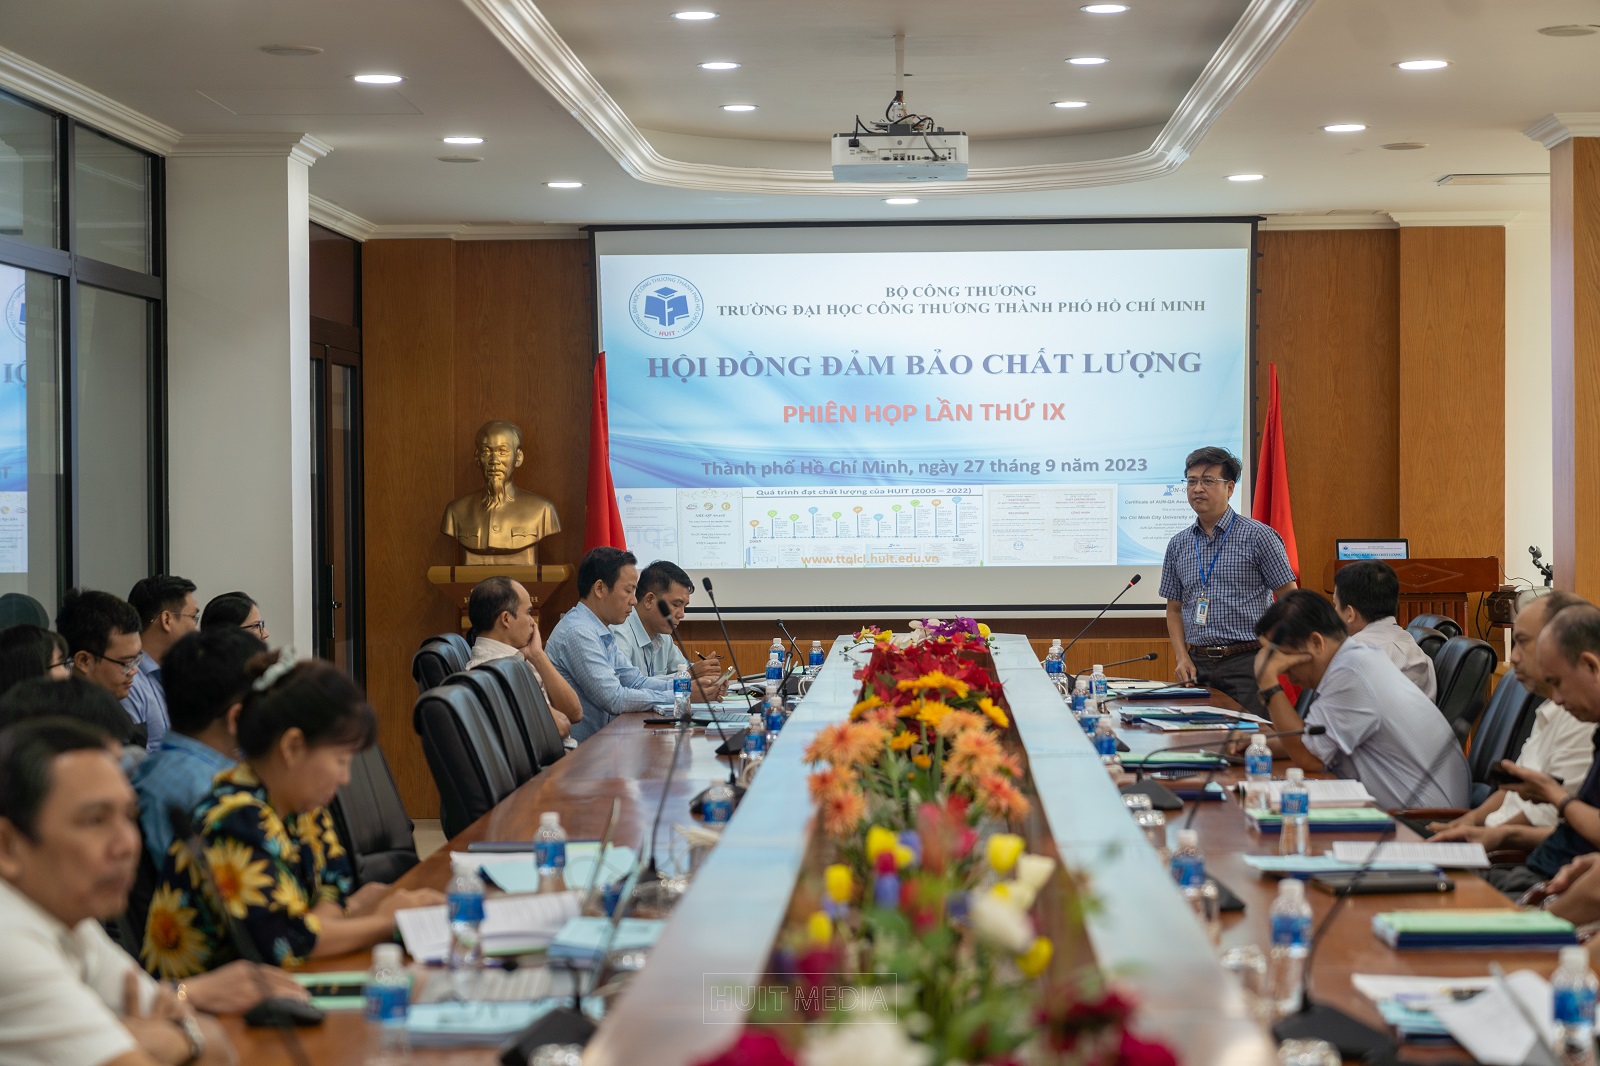 Hội đồng Đảm bảo chất lượng giáo dục Trường Đại học Công Thương TP. Hồ Chí Minh họp phiên thứ IX năm 2023